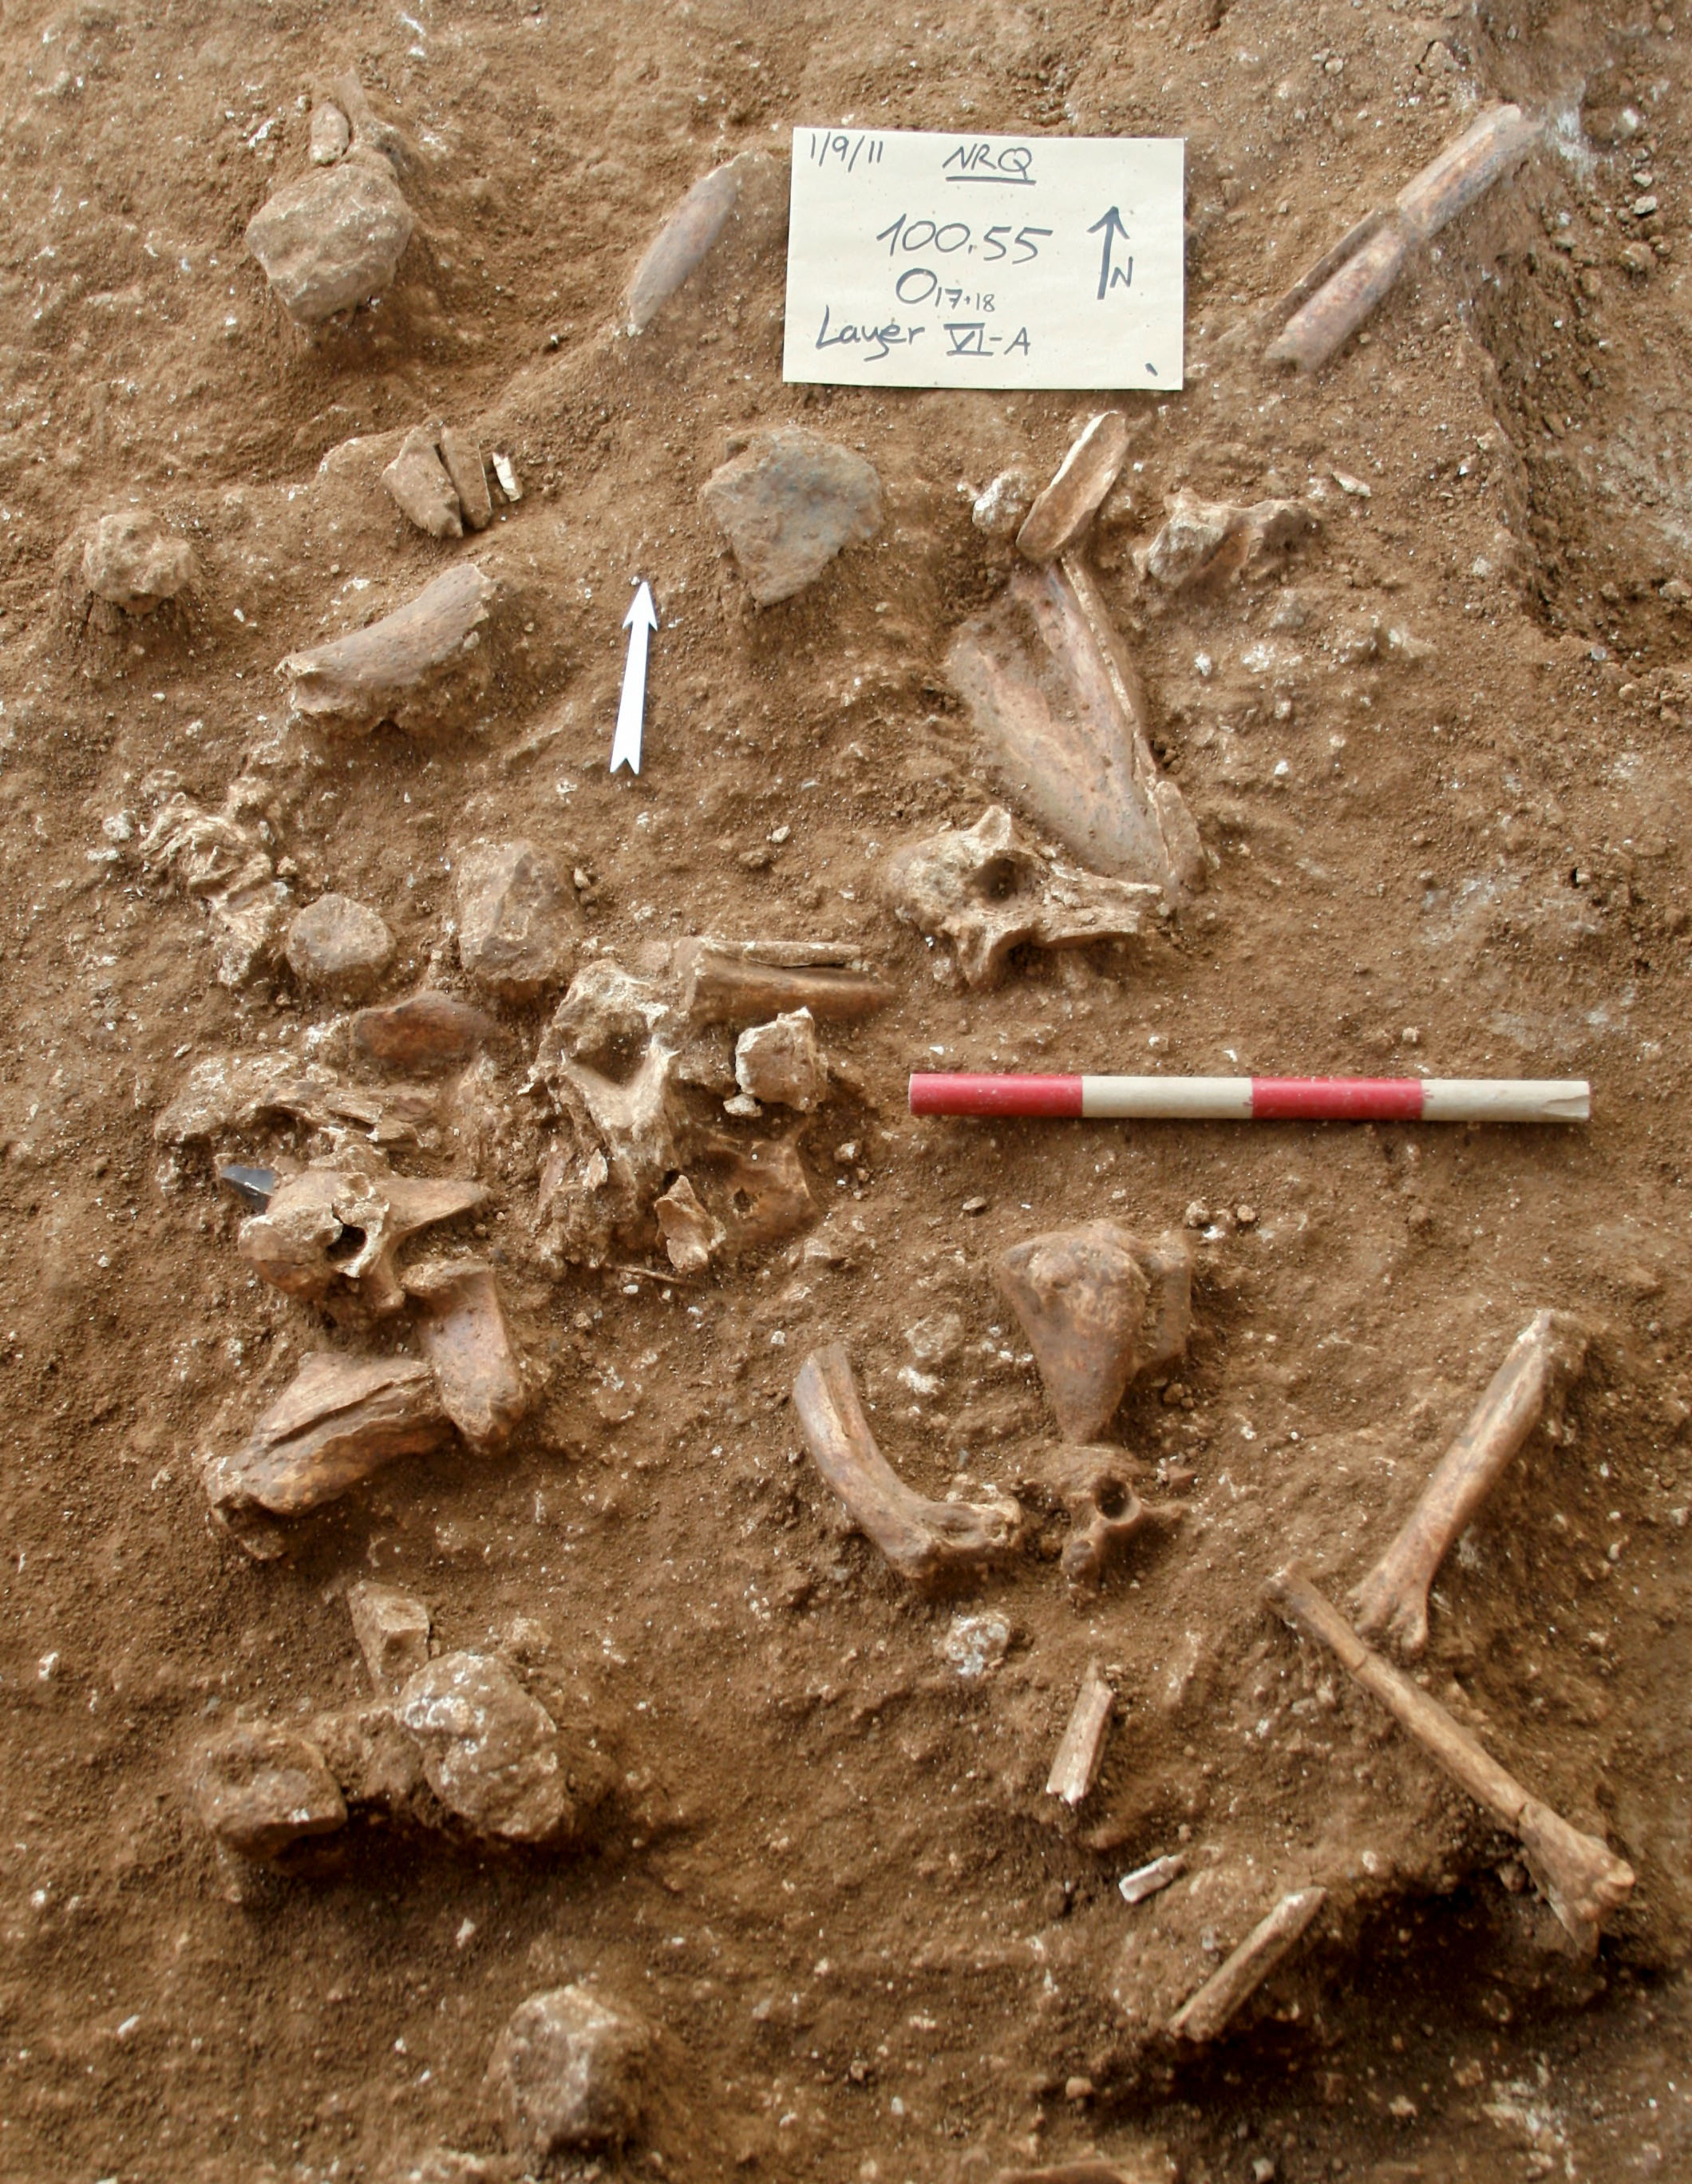 A Ramla közelében végzett feltárás során felfedezett csontok egy eddig ismert embertípushoz sem köthetők. Mint kiderült, egy új embertípusról van szó, amit Nesher Ramla névre kereszteltek.